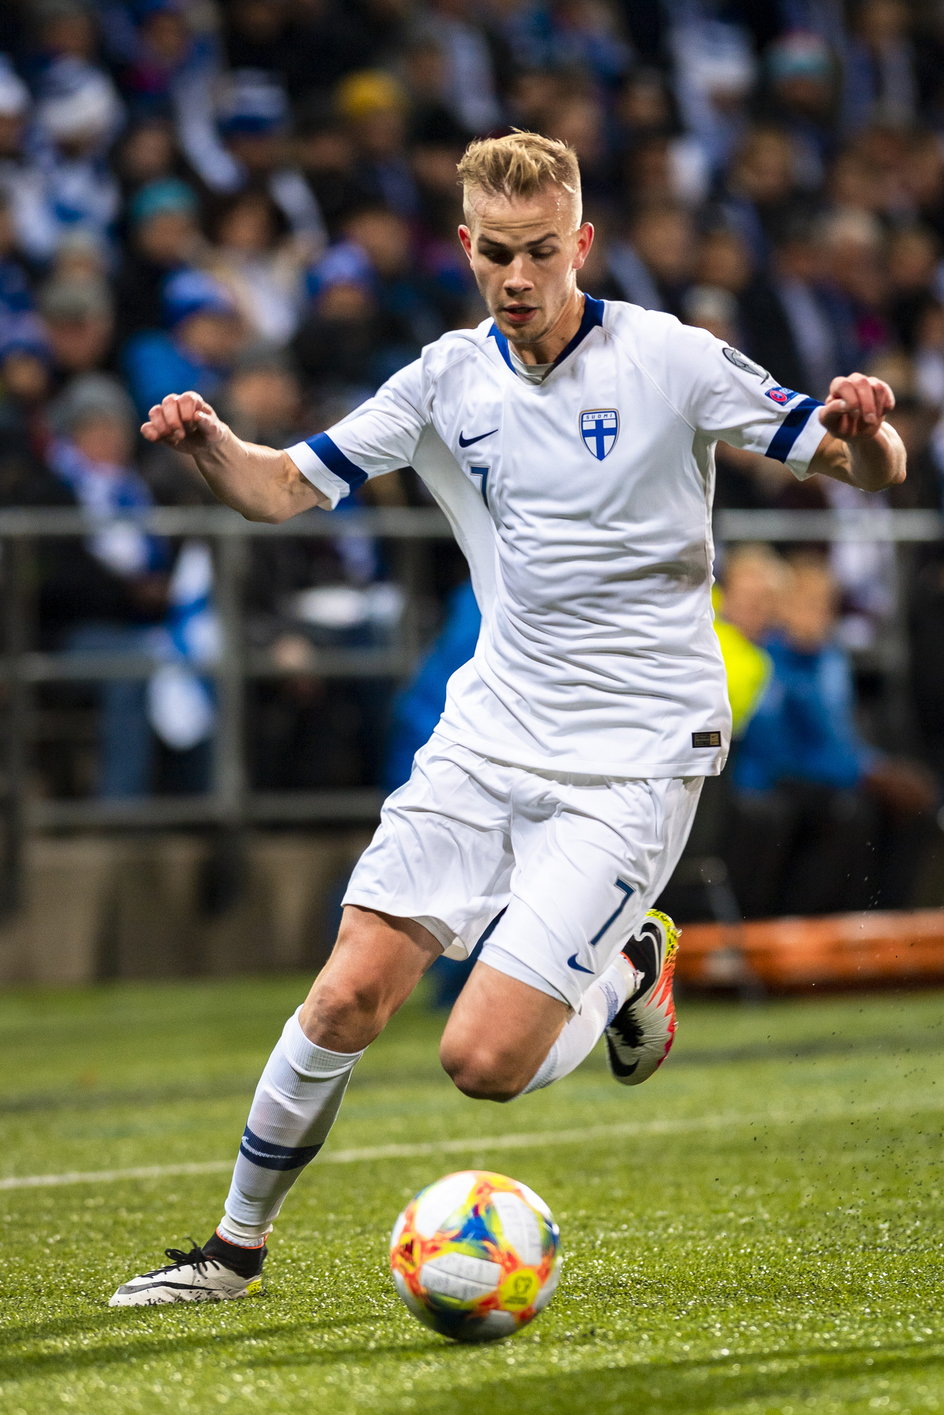 Jasse Tuominen ma szansę zostać jedną z gwiazd I ligi.